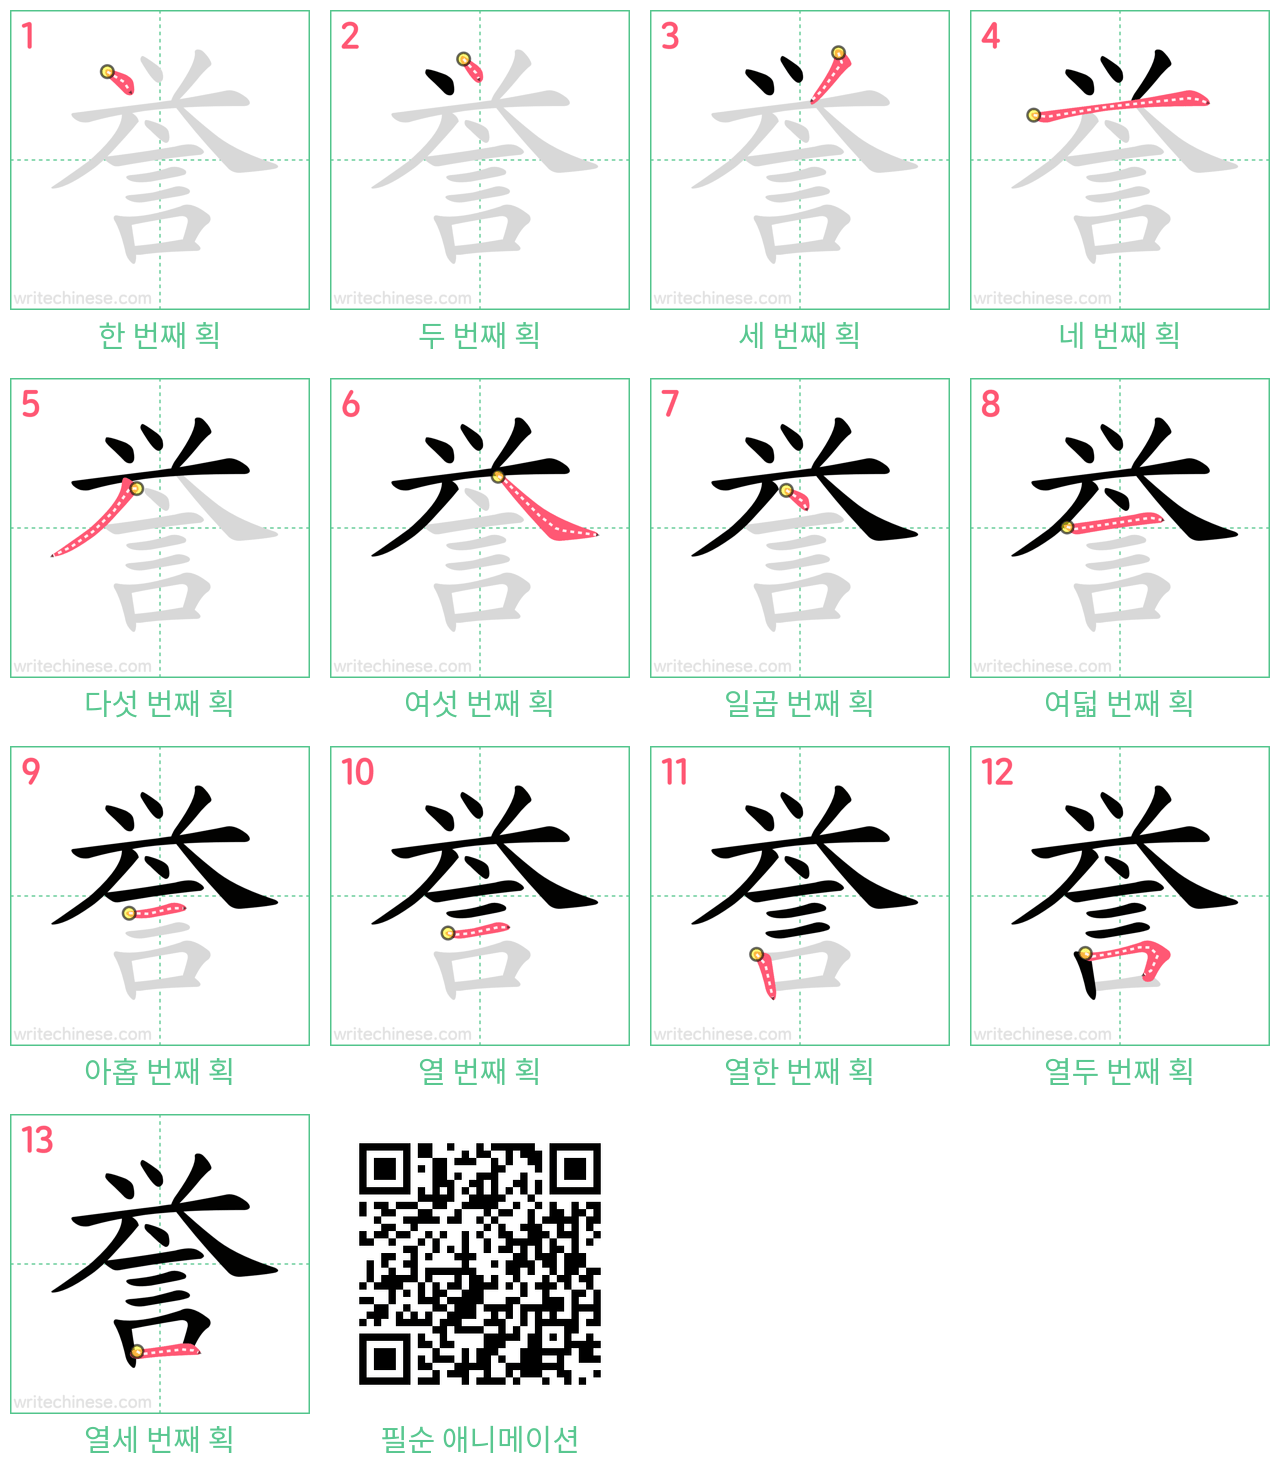 誉 step-by-step stroke order diagrams